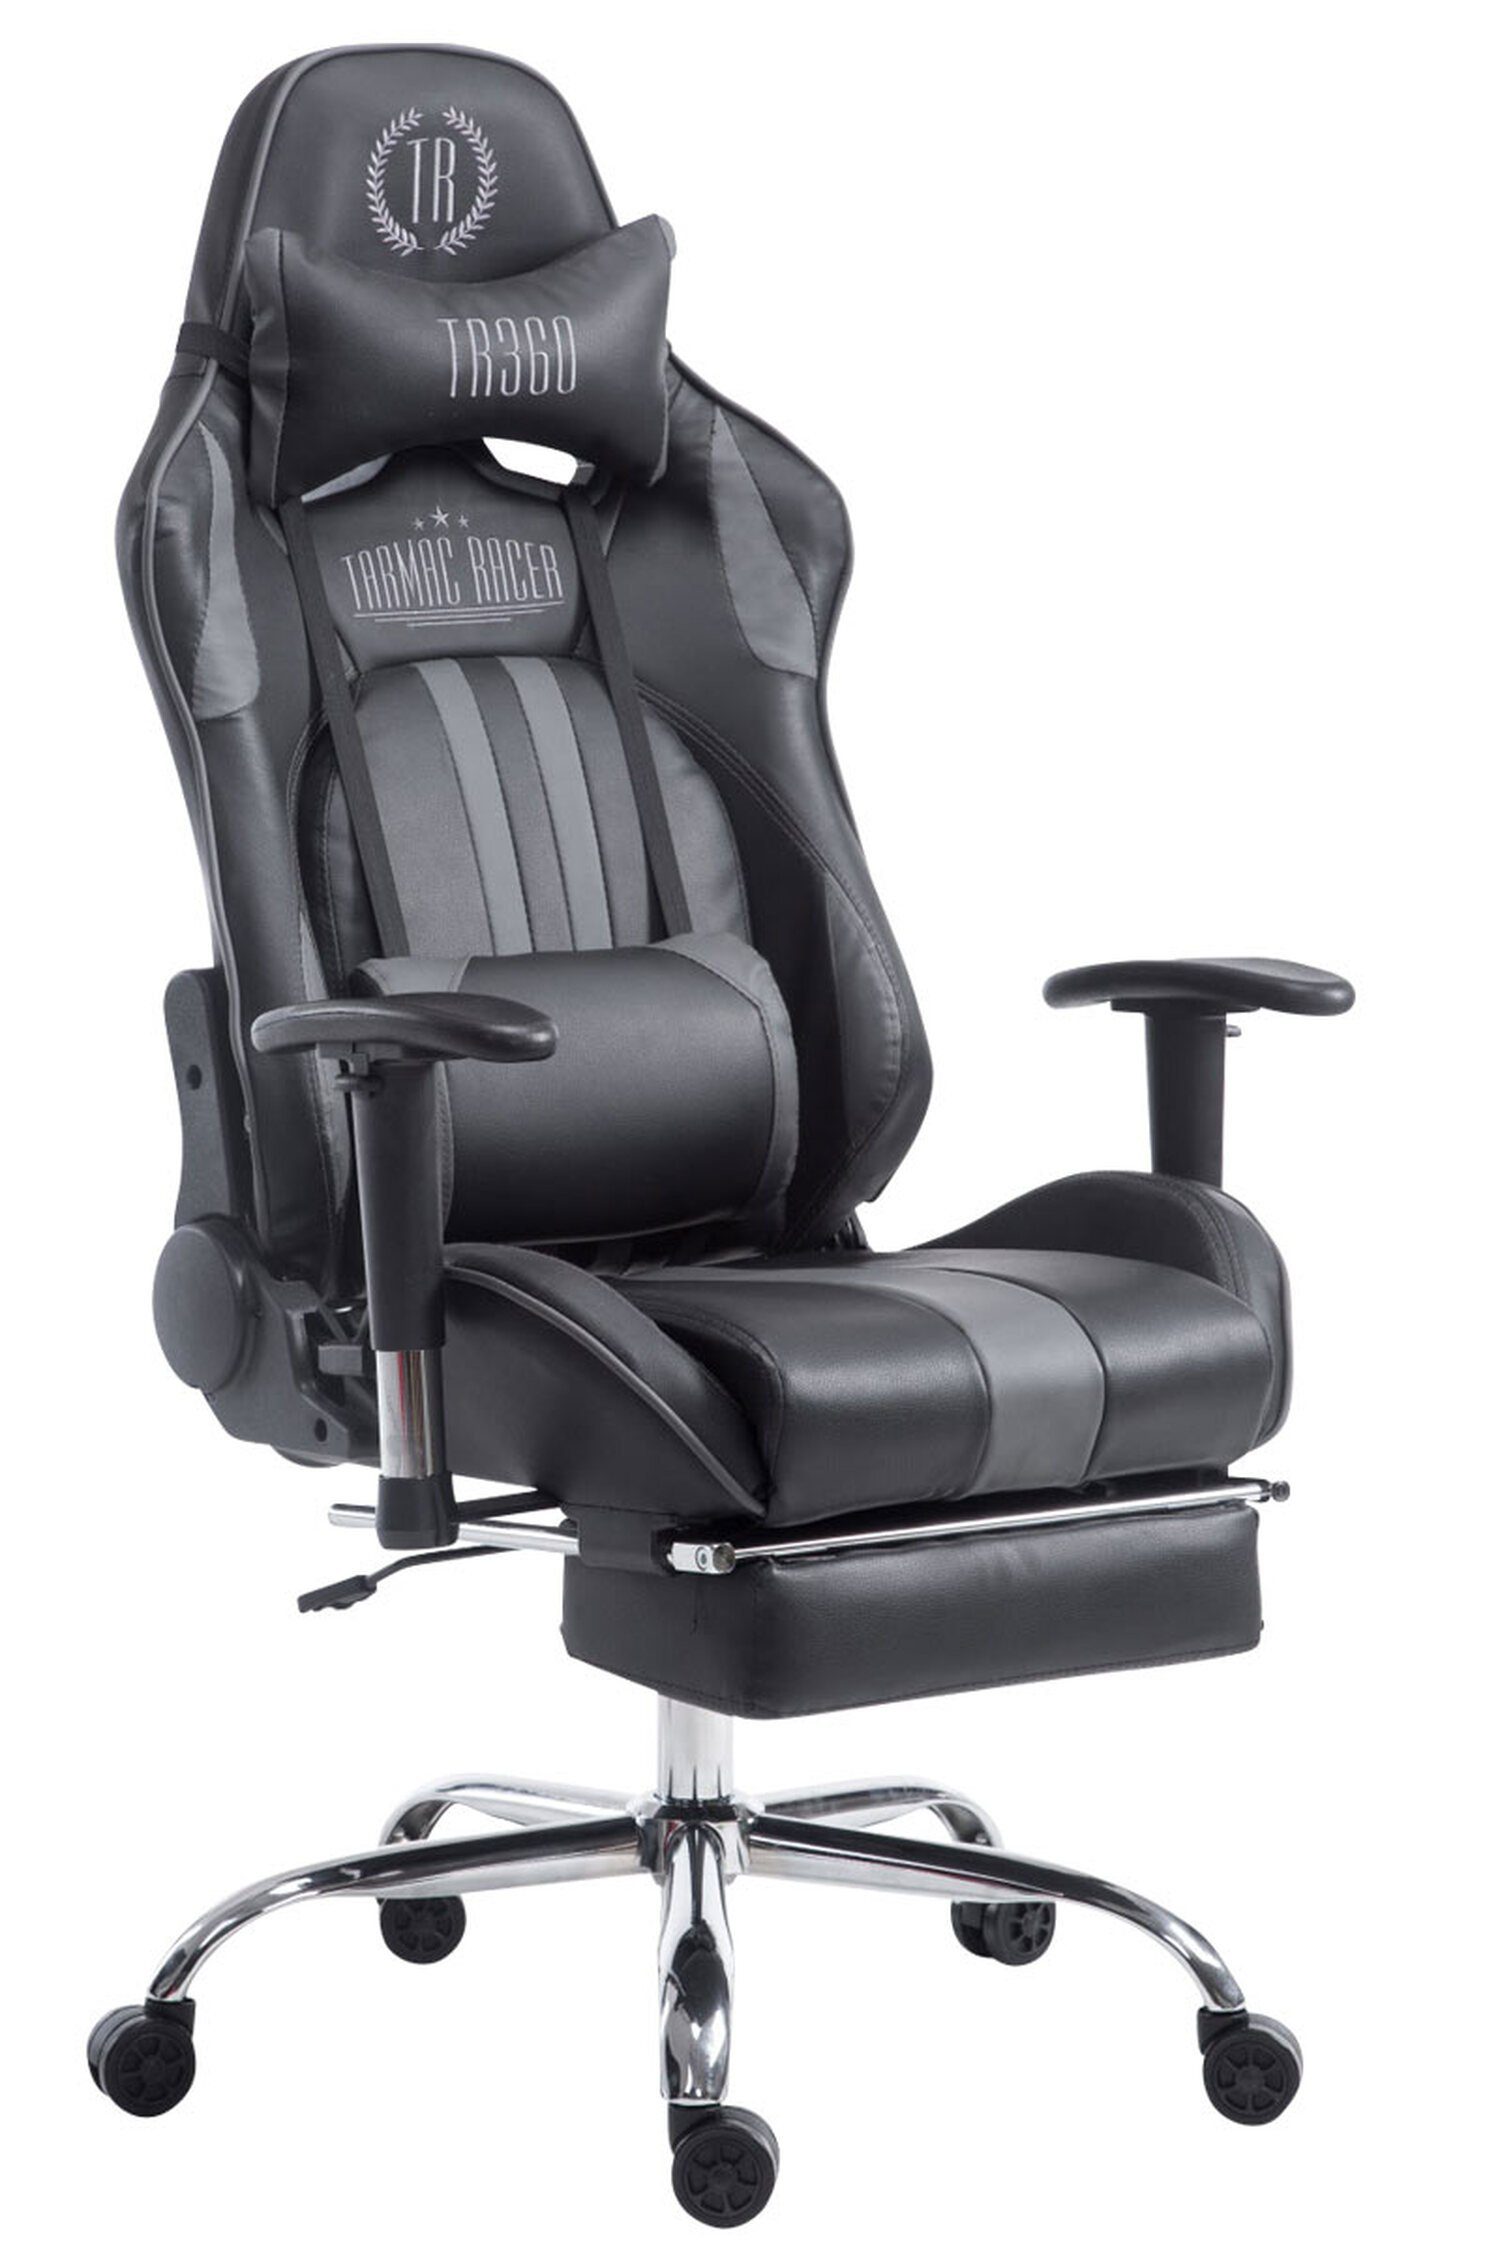 TPFLiving Gaming-Stuhl Limitless mit bequemer Rückenlehne - höhenverstellbar und 360° drehbar (Schreibtischstuhl, Drehstuhl, Gamingstuhl, Racingstuhl, Chefsessel), Gestell: Metall chrom - Sitzfläche: Kunstleder schwarz/grau